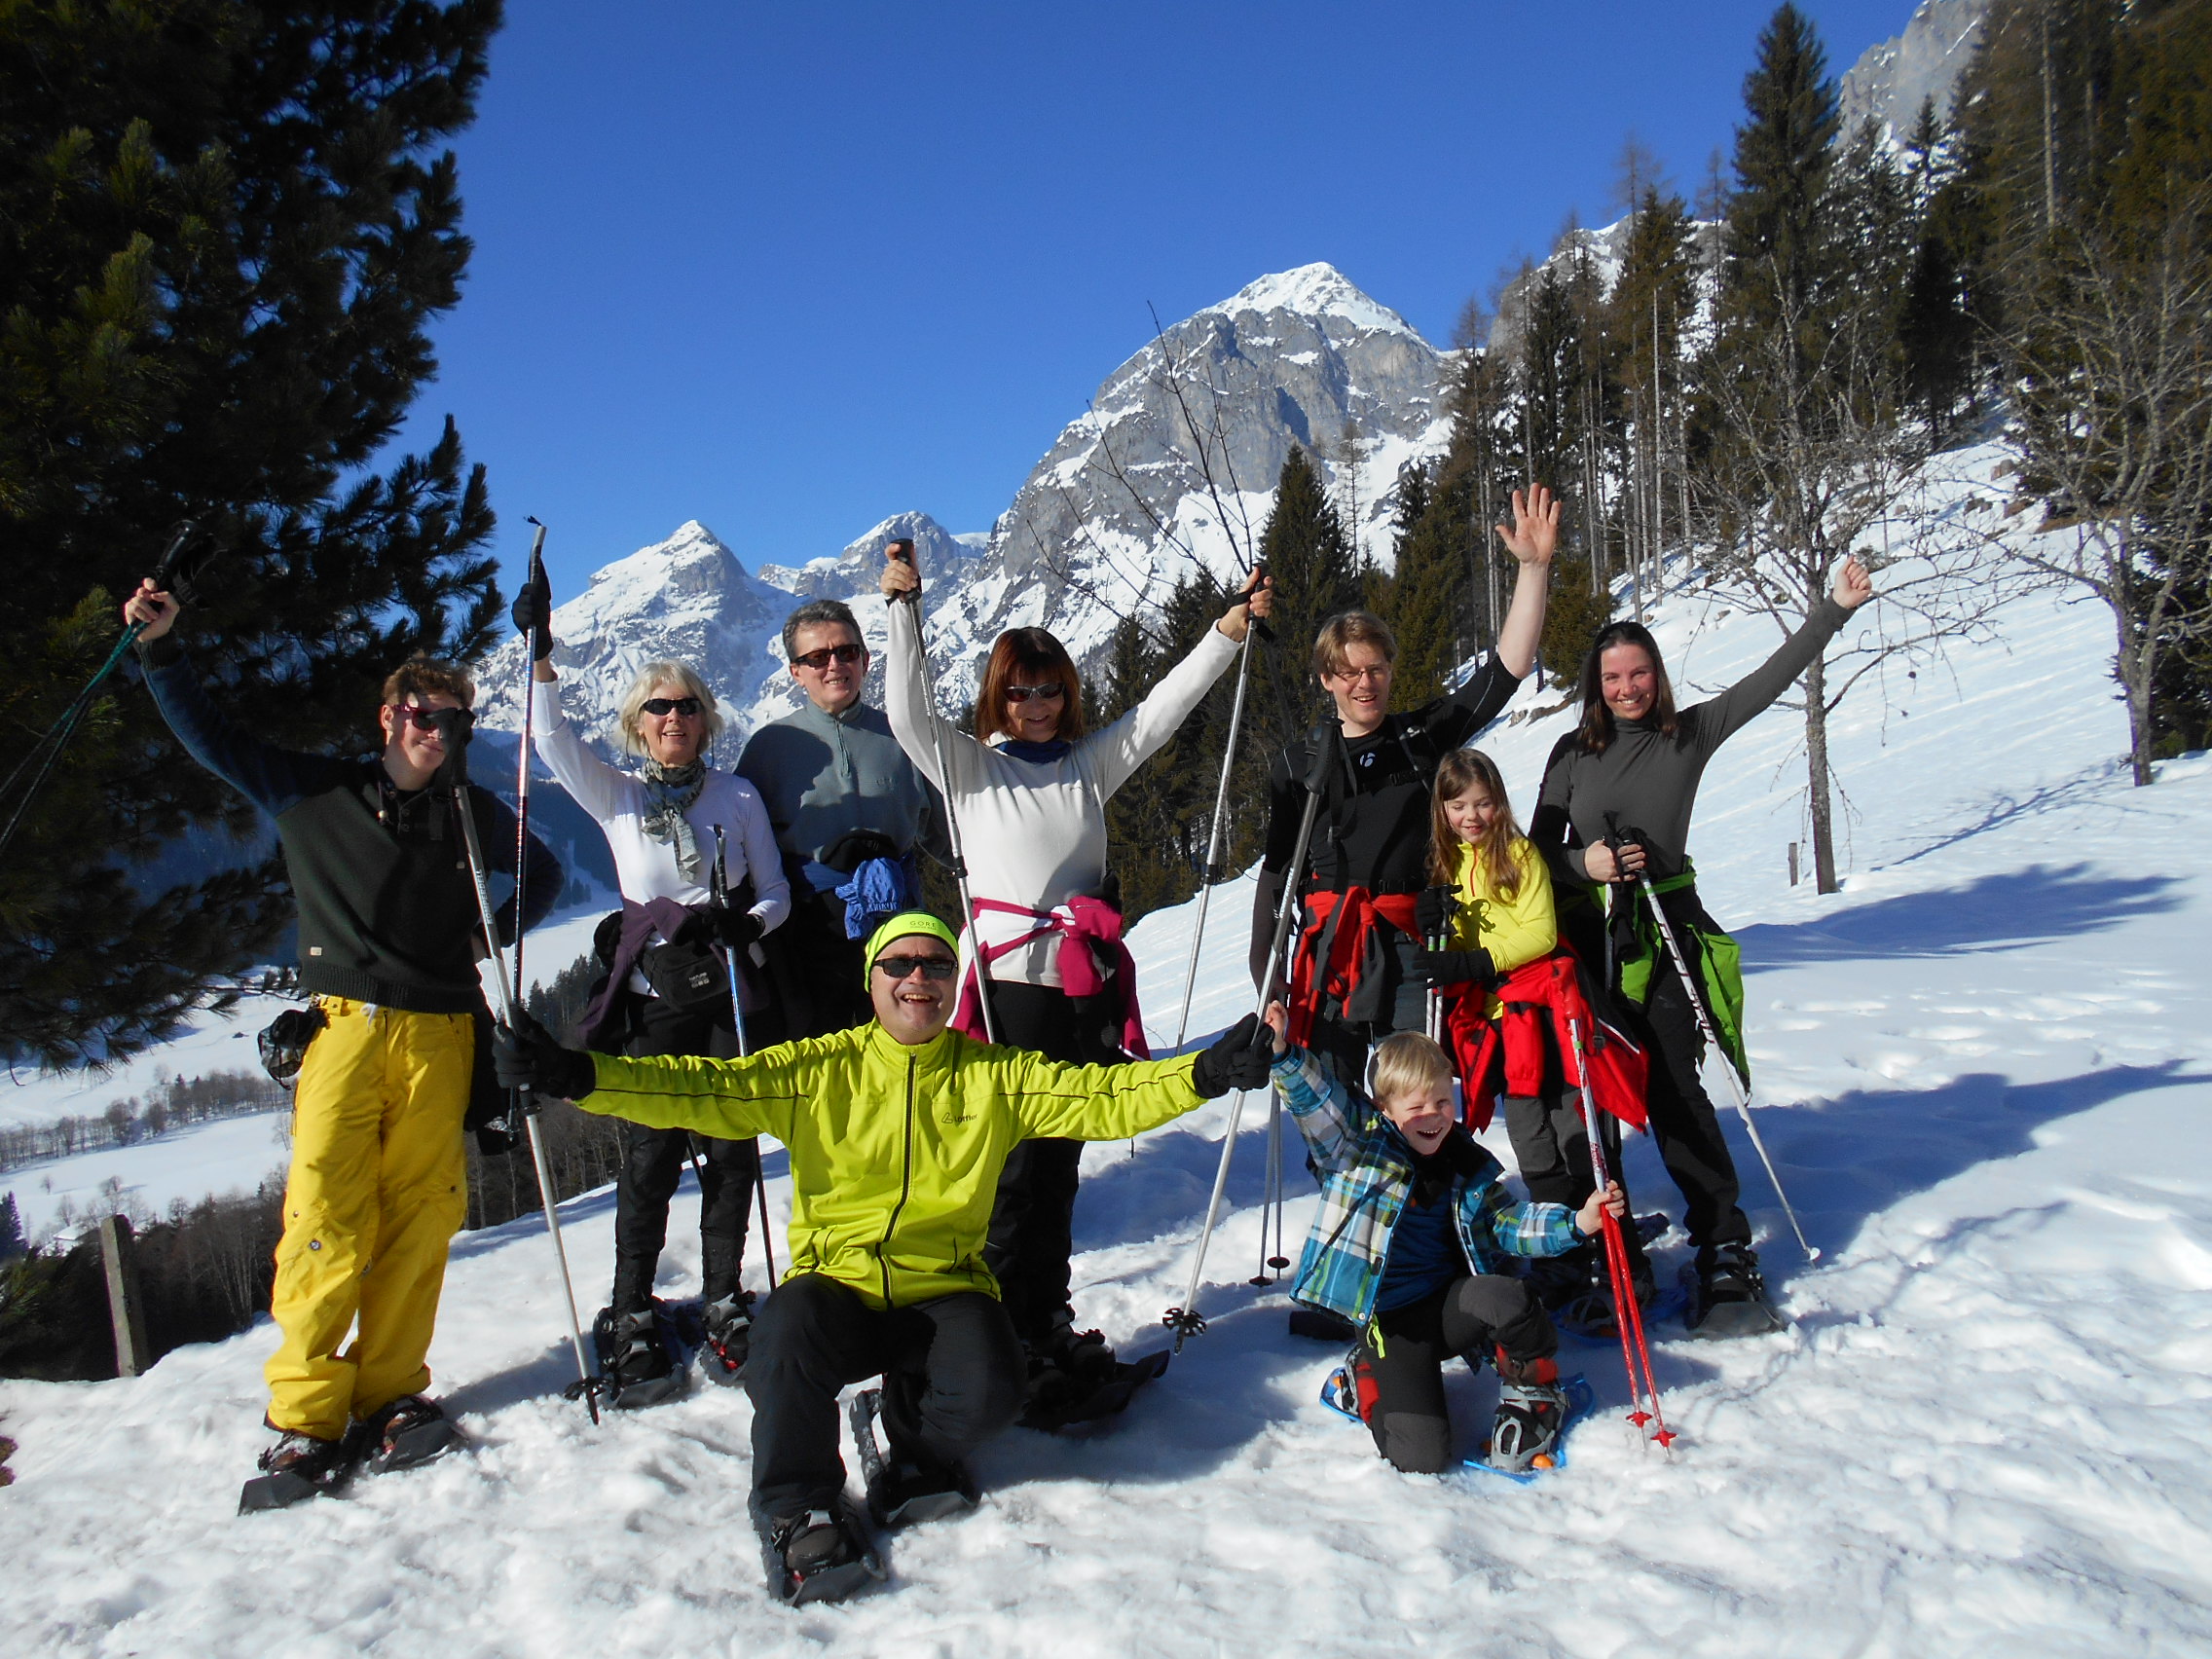 Schneeschuhwandern: Winteraktivitäten abseits der Skipisten